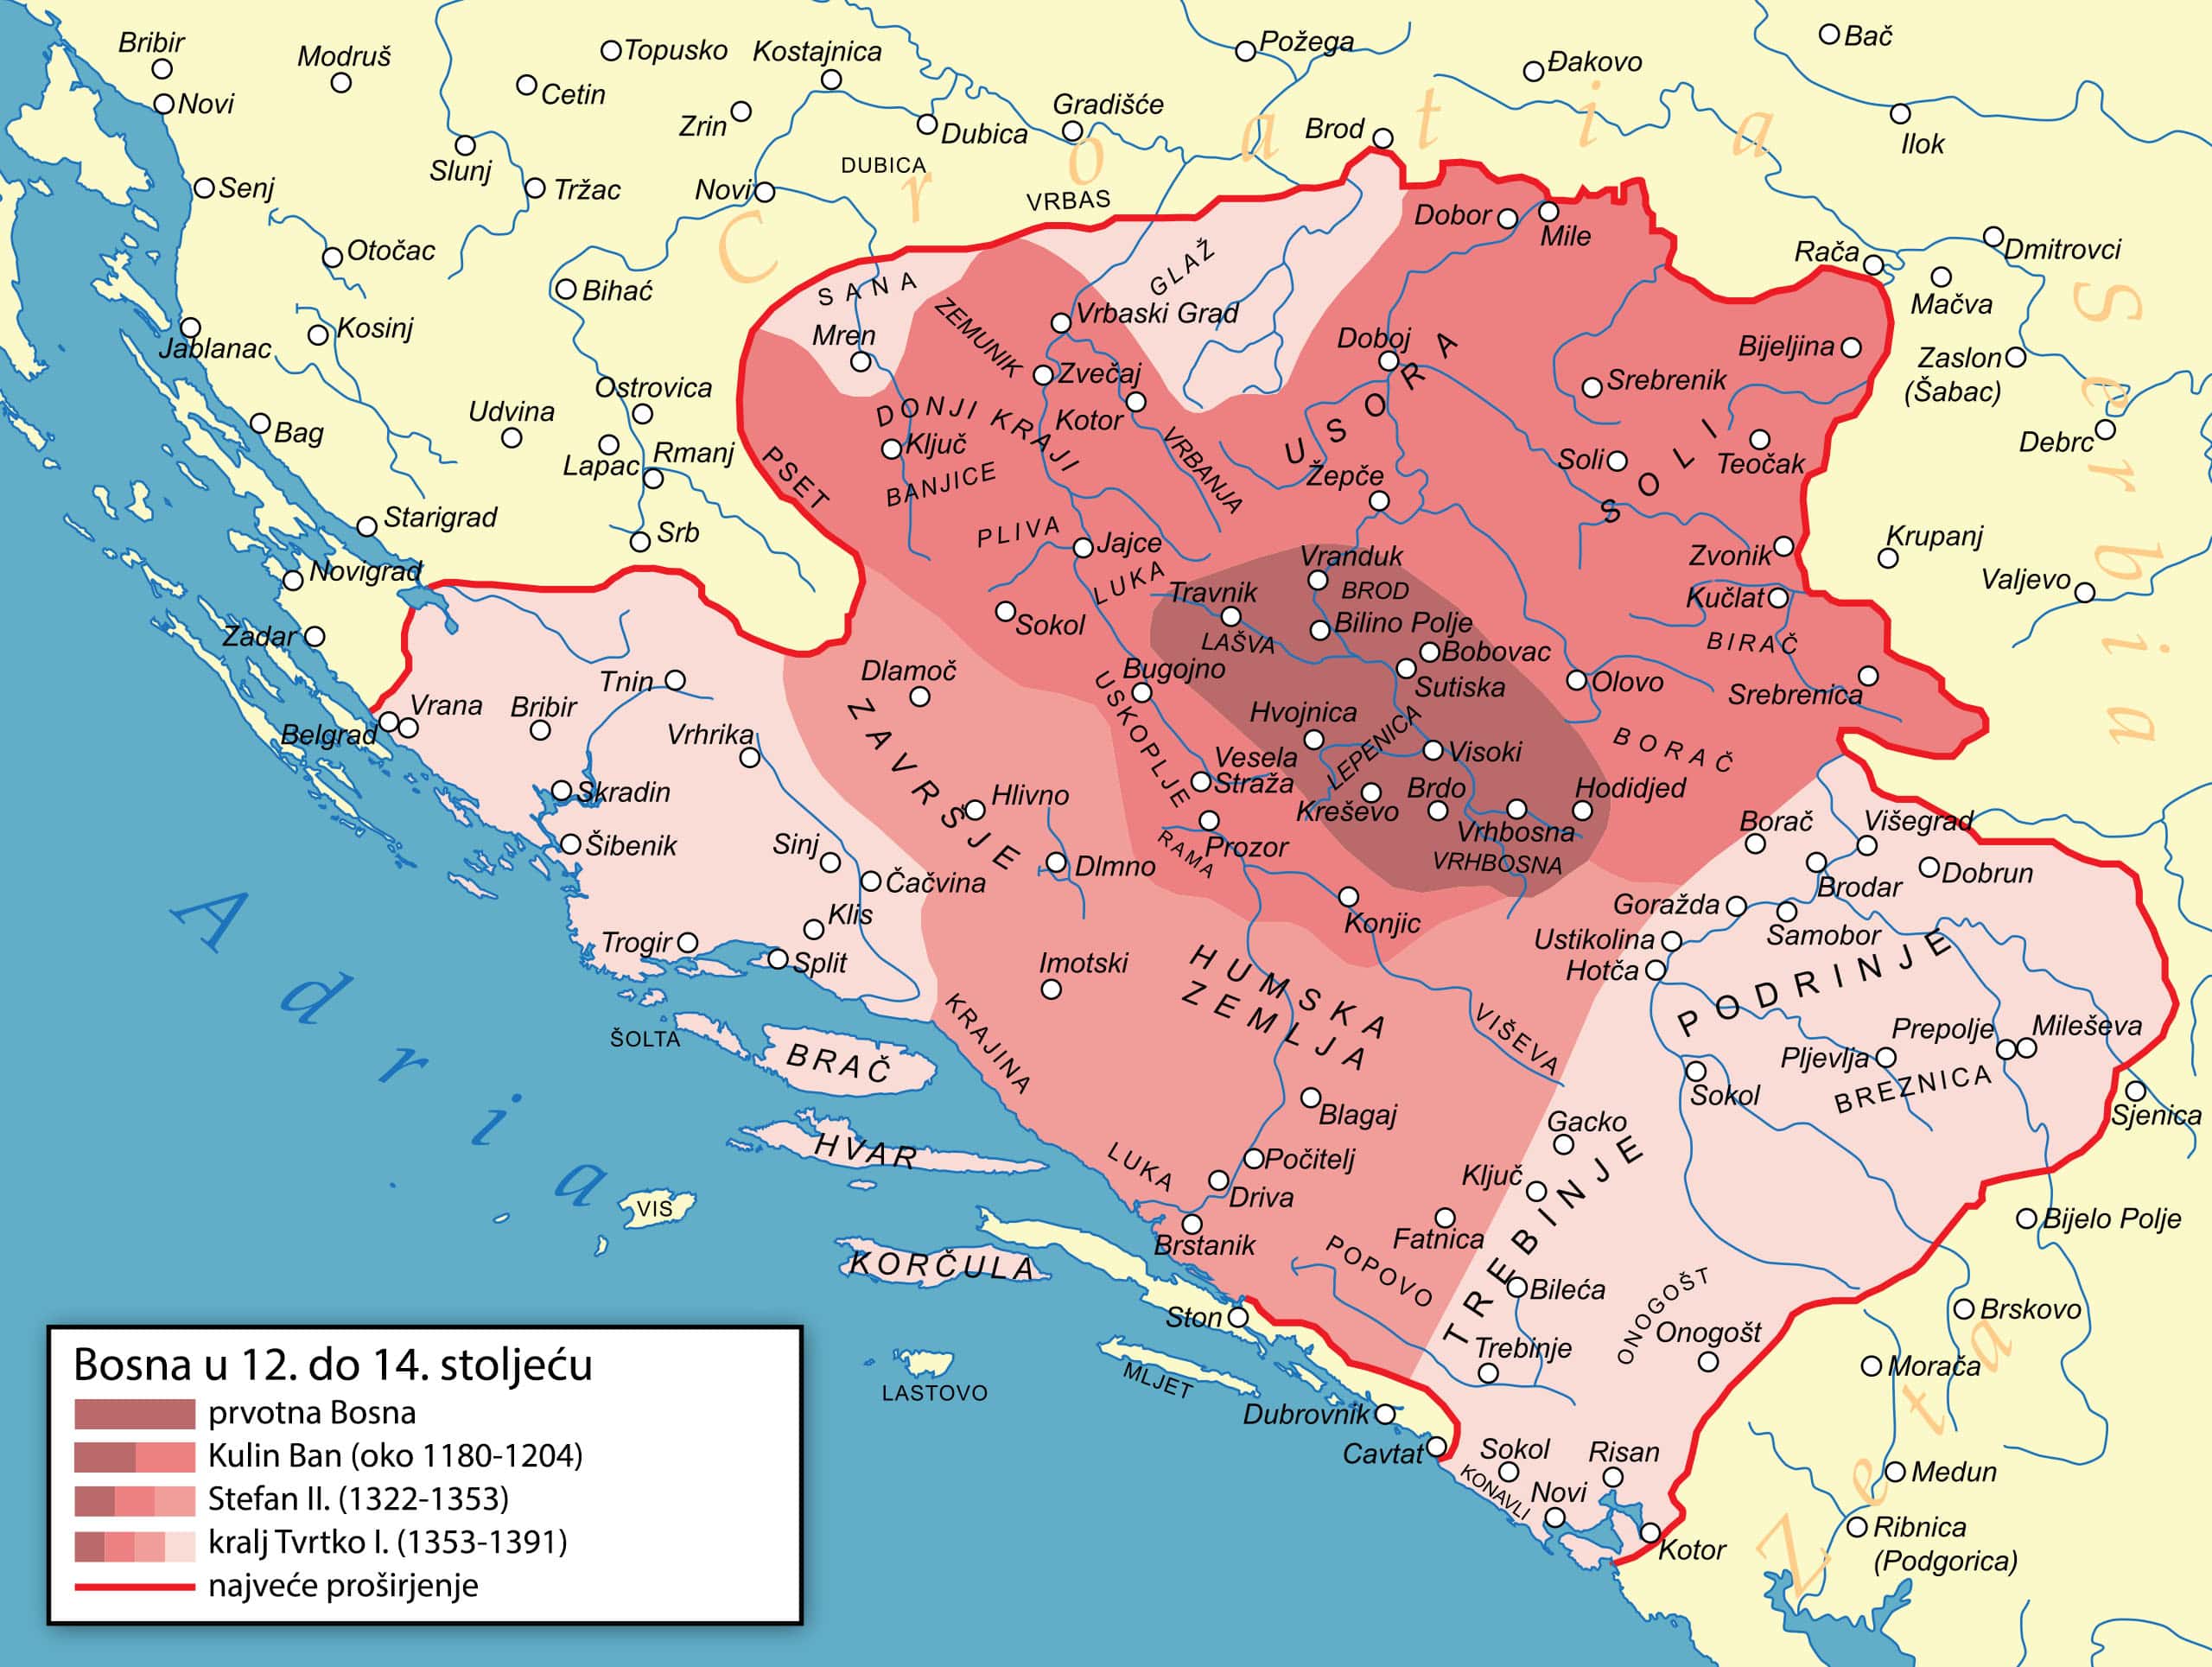 Širenje bosanskog kraljevstva od 12. do 14. stoljeća, s Humom – "Humskom zemljom" – u sredini i susjednom Zetskom kneževinom dolje desno